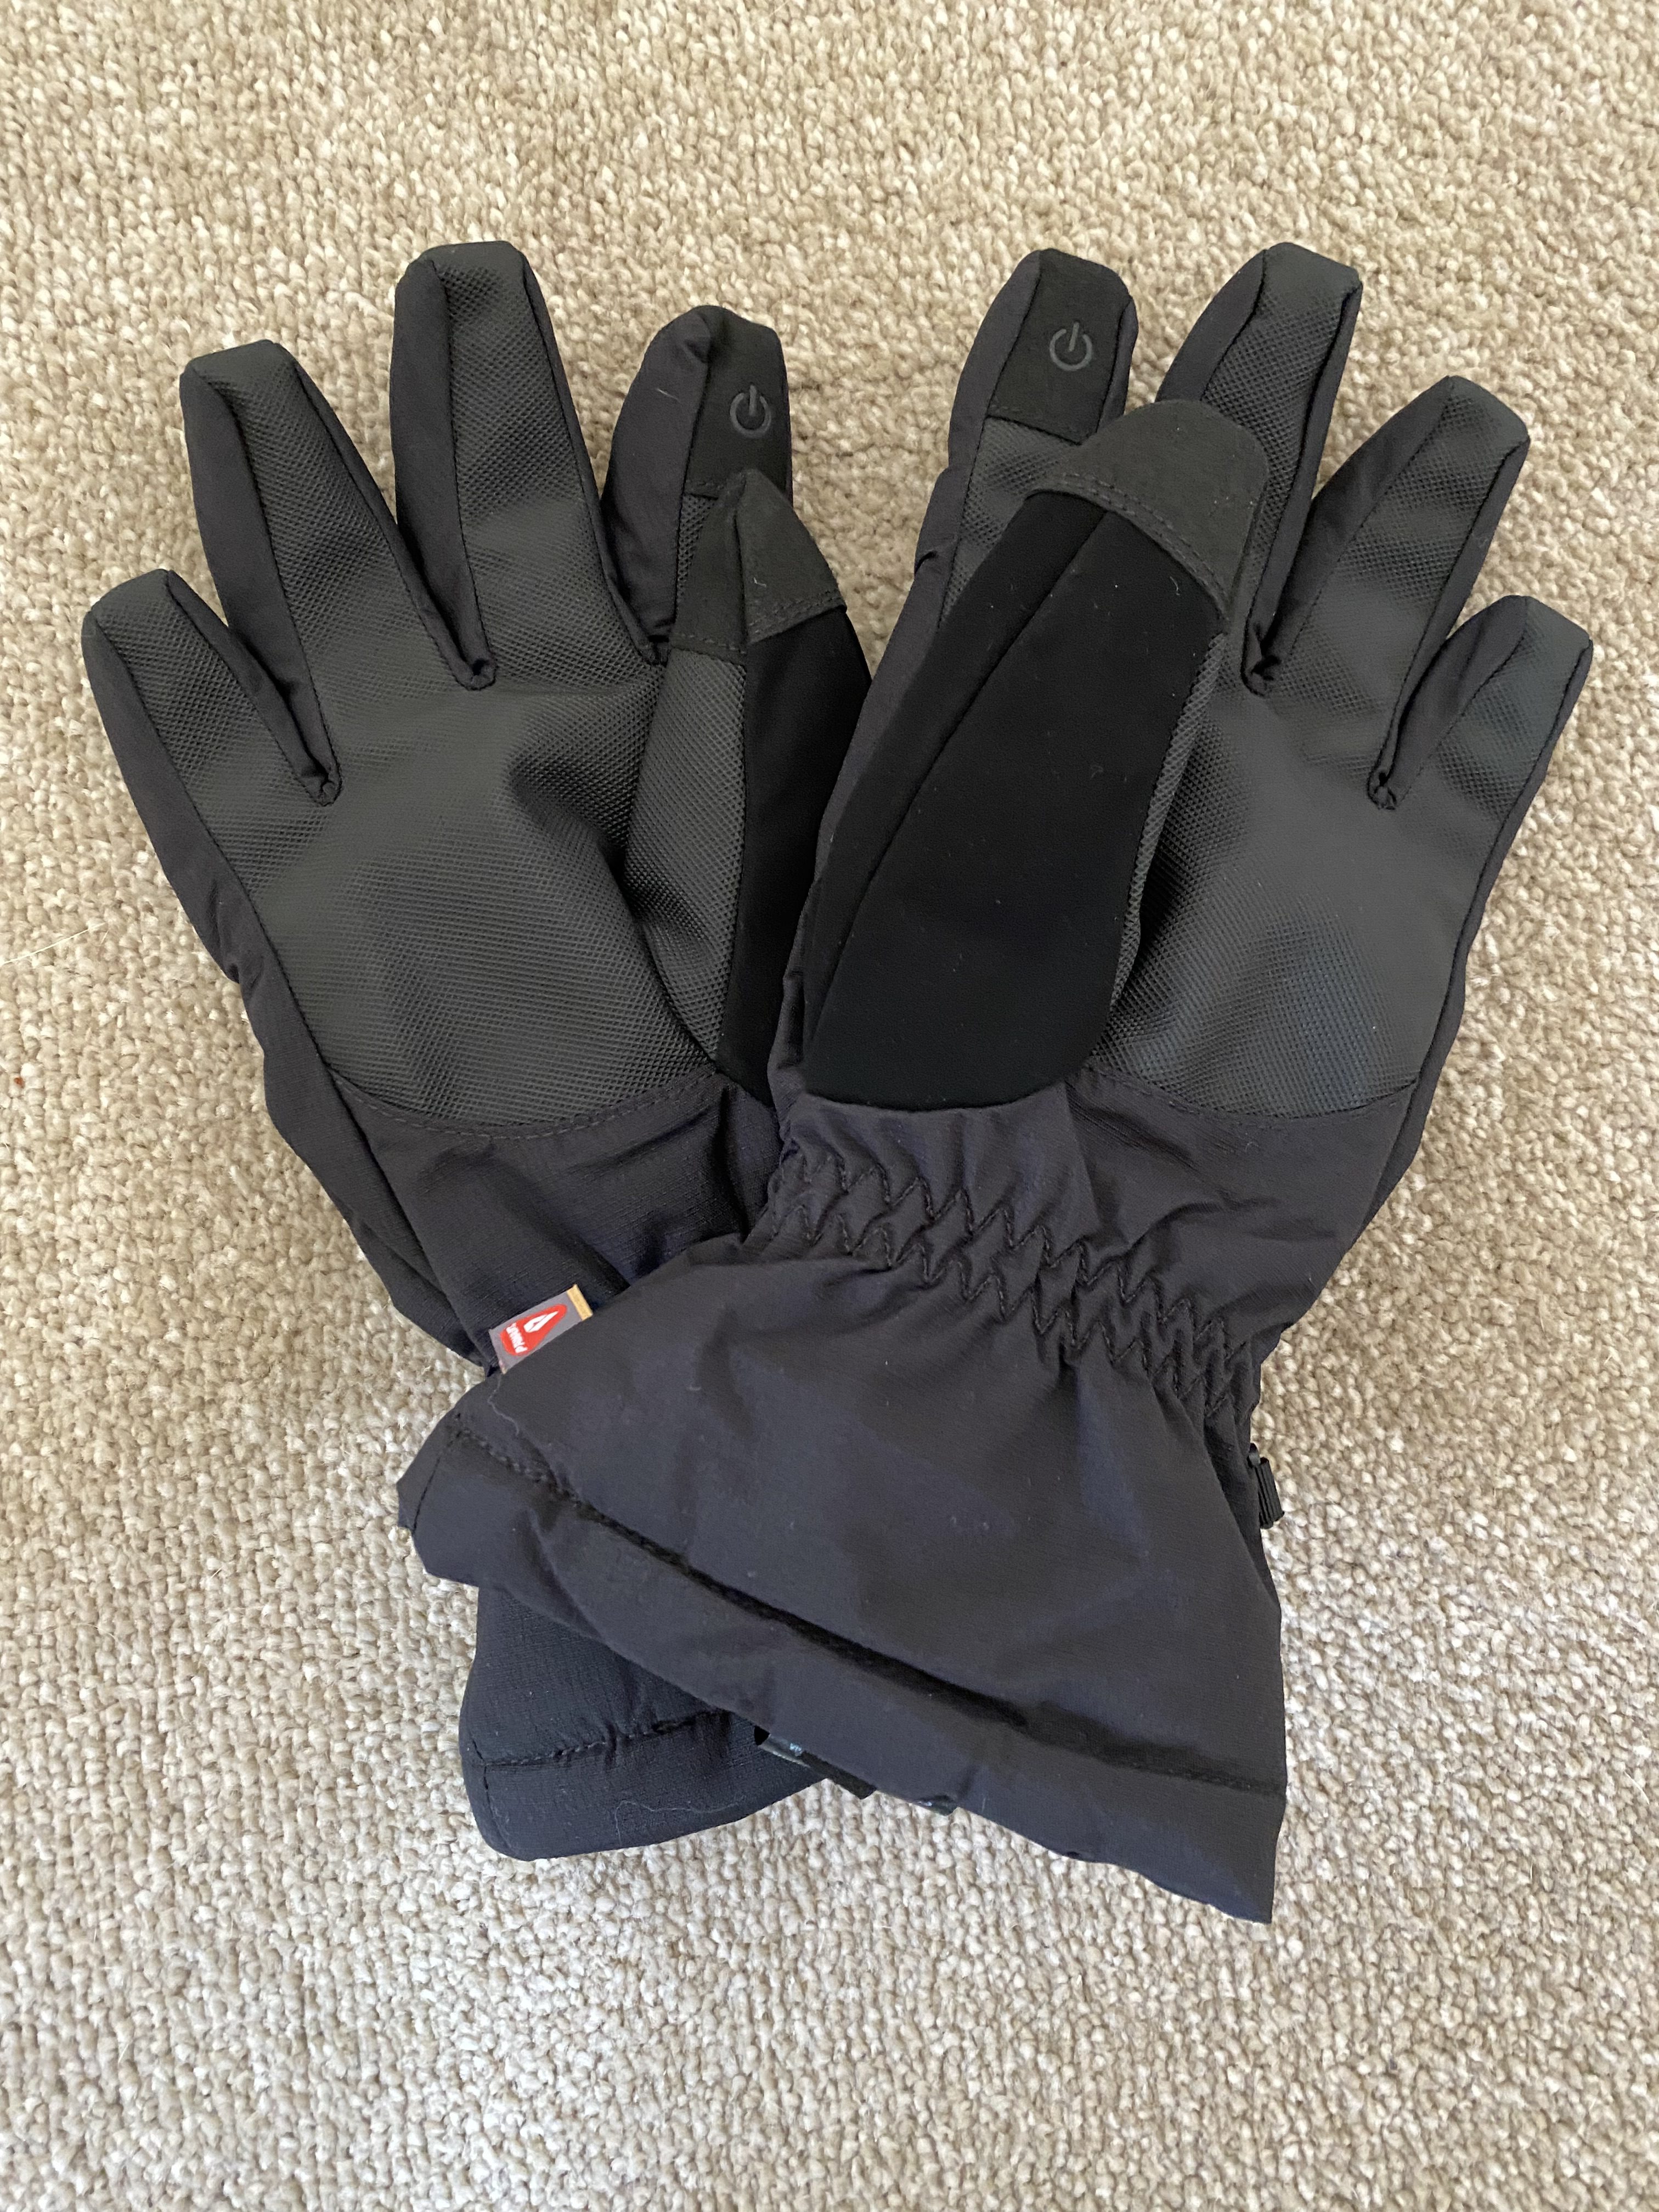 Keela Extreme Gloves